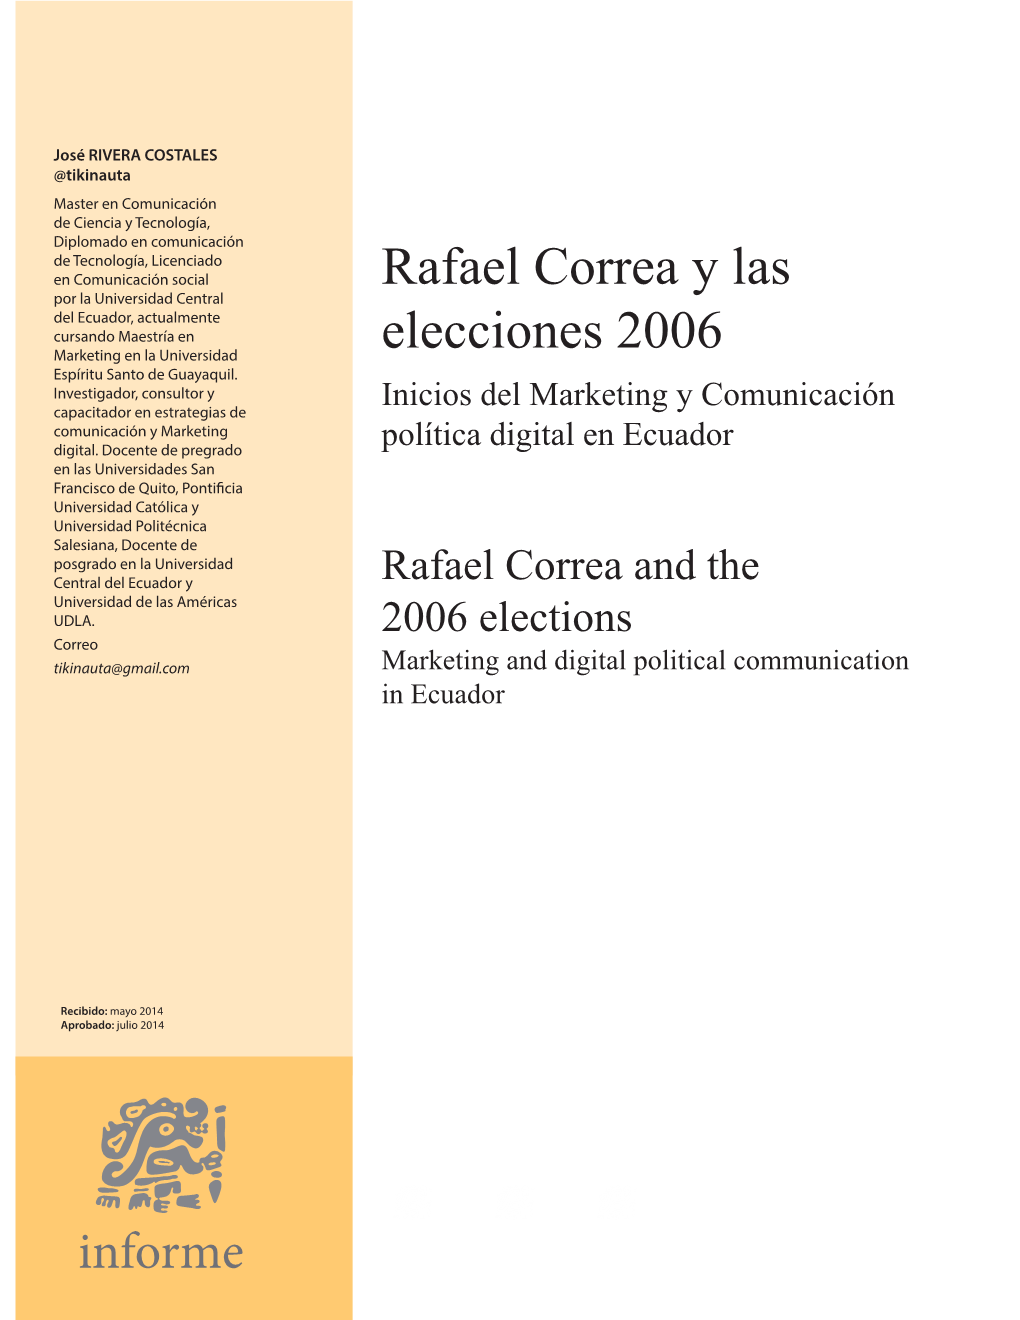 Rafael Correa Y Las Elecciones 2006